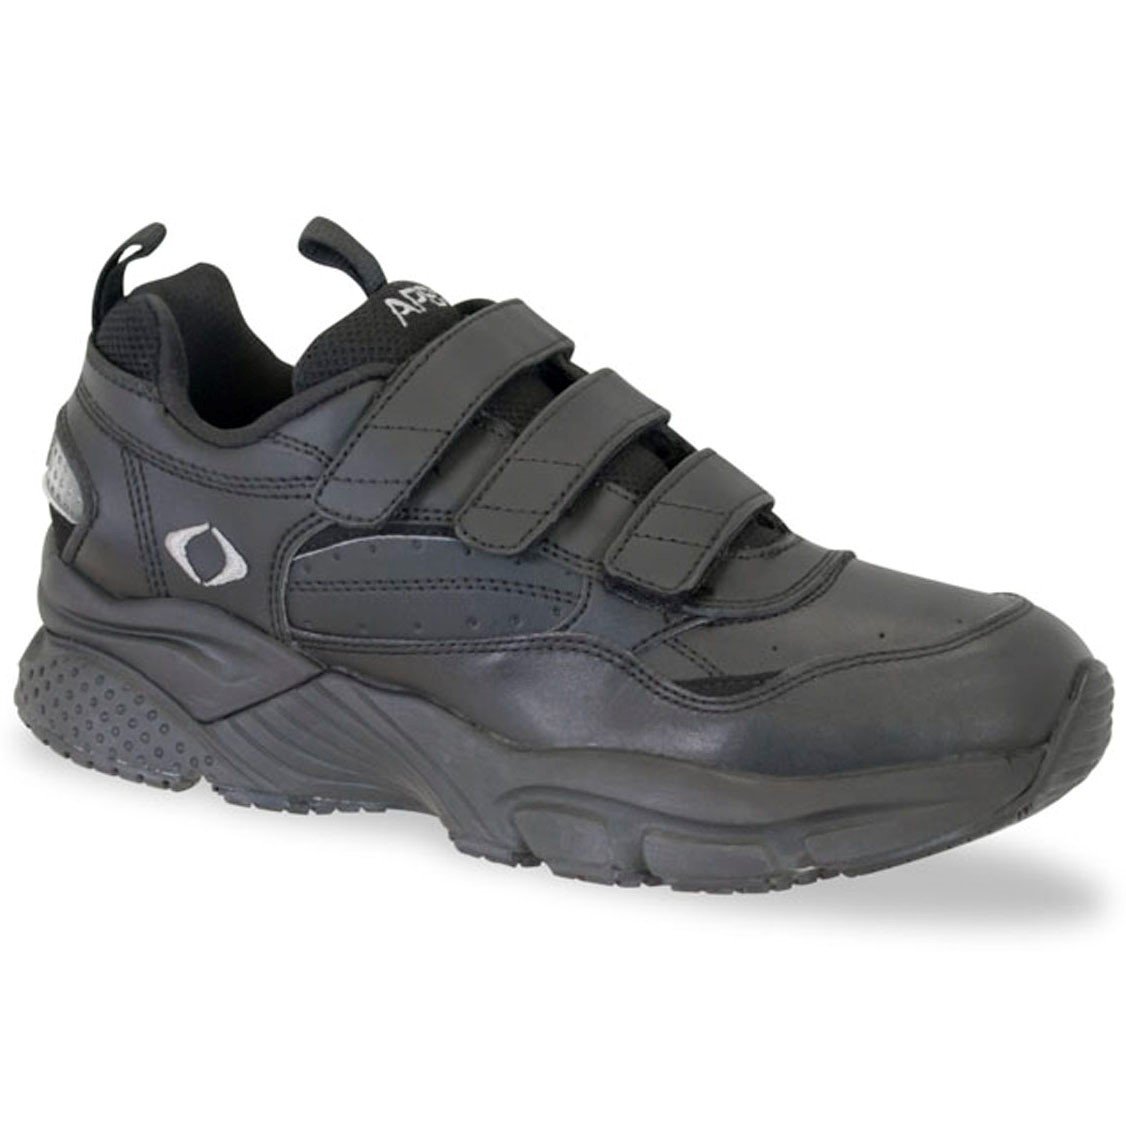 Aetrex X903 Velcro Walking Shoe - 3 